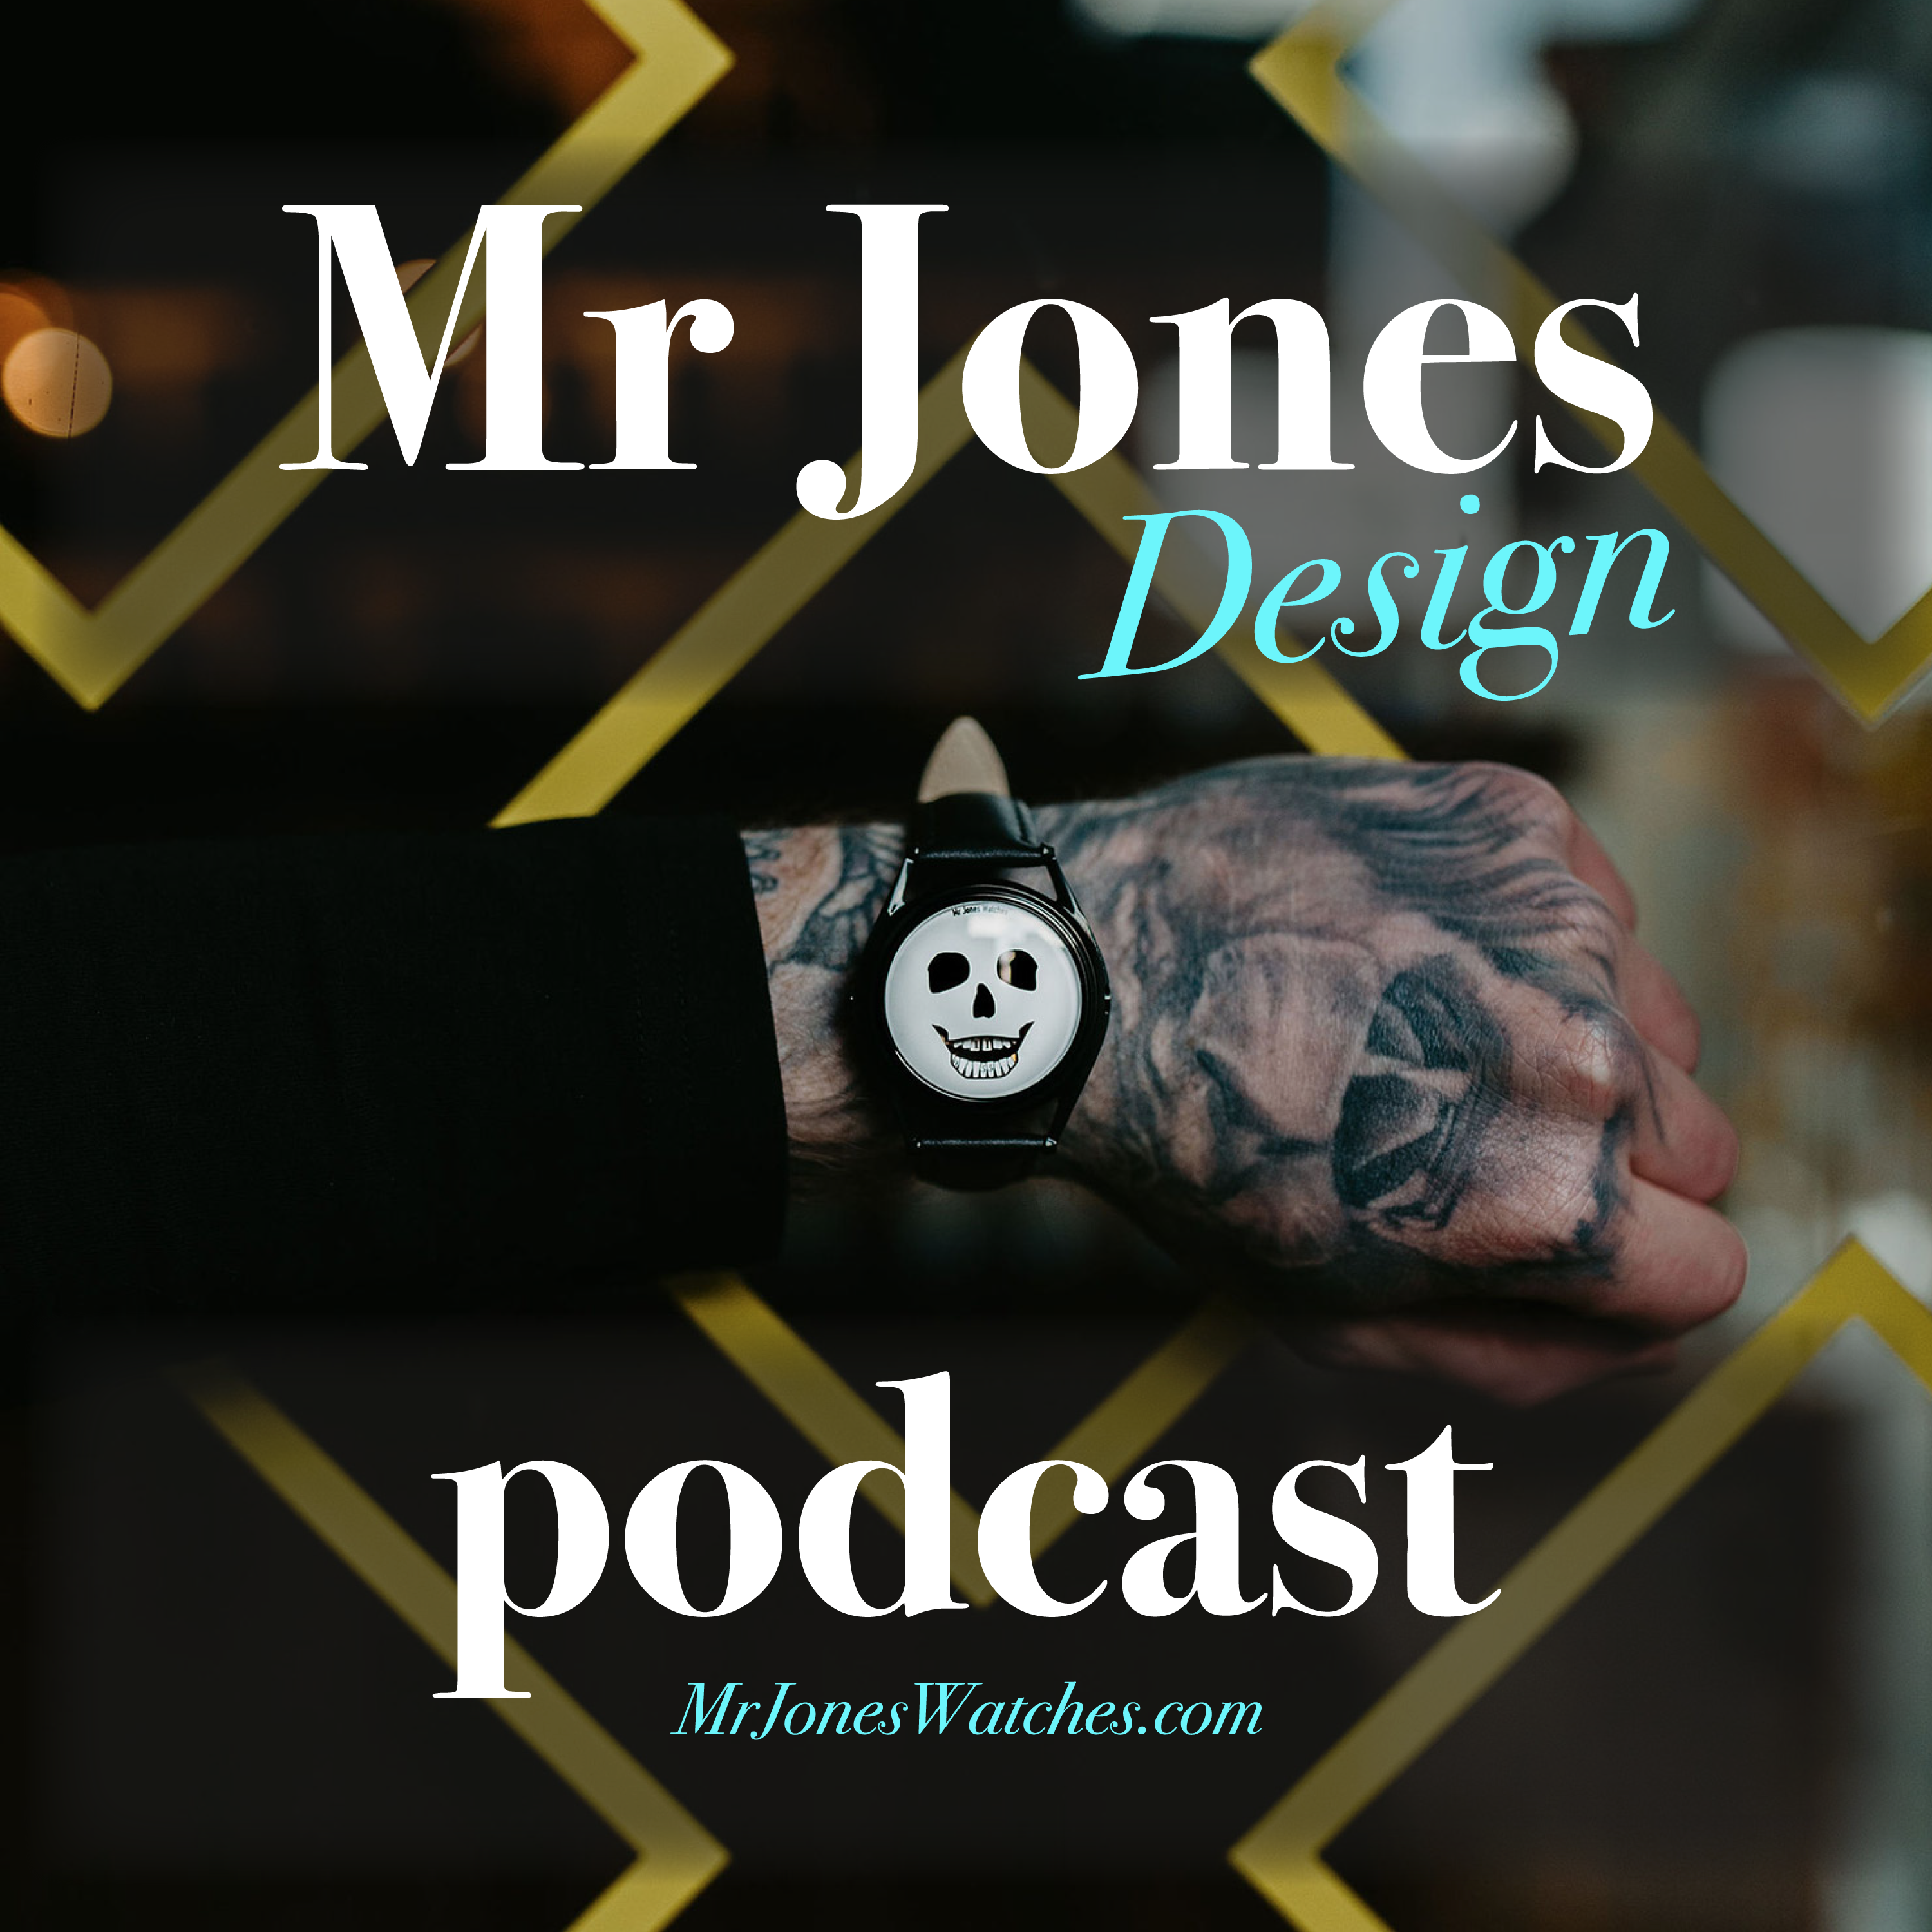 Mr Jones Design Podcast